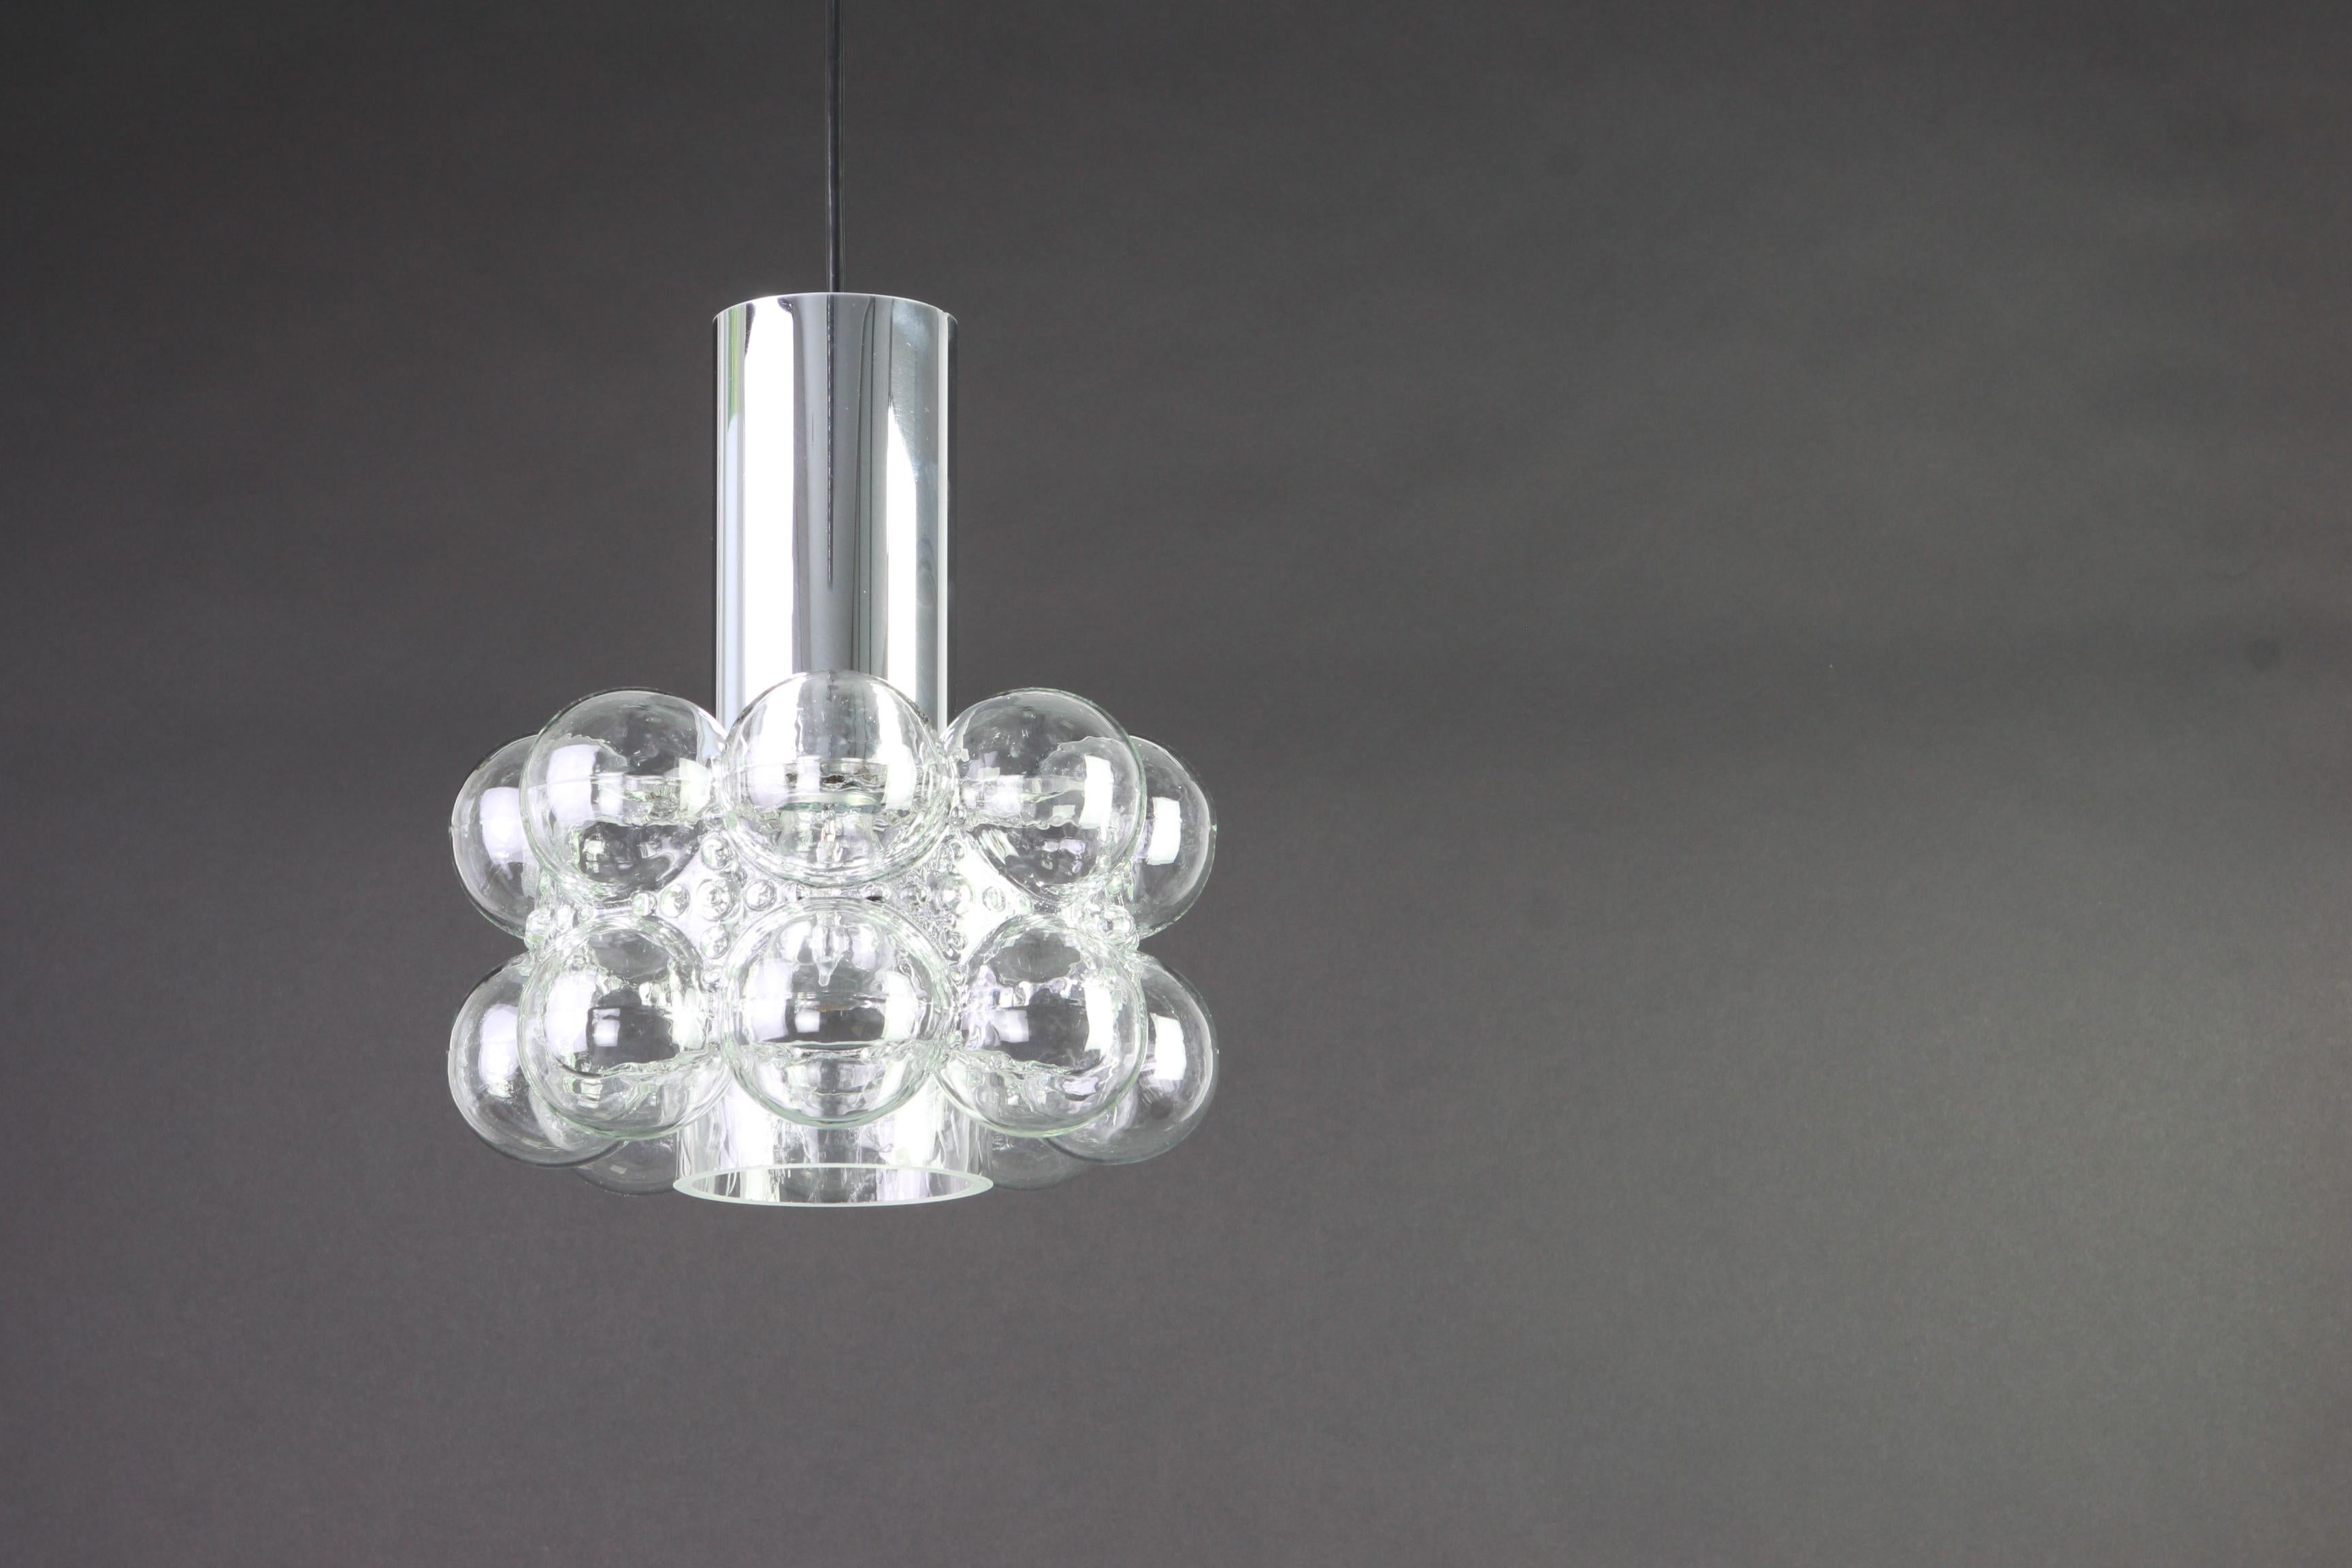 1 de 2 pendentifs ronds en verre bullé conçus par Helena Tynell pour Limburg, fabriqués en Allemagne, vers les années 1970.

Douilles : nécessite 1 ampoule standard E27 de 100W max chacune et compatible avec les normes US/UK/ etc.
La tige de